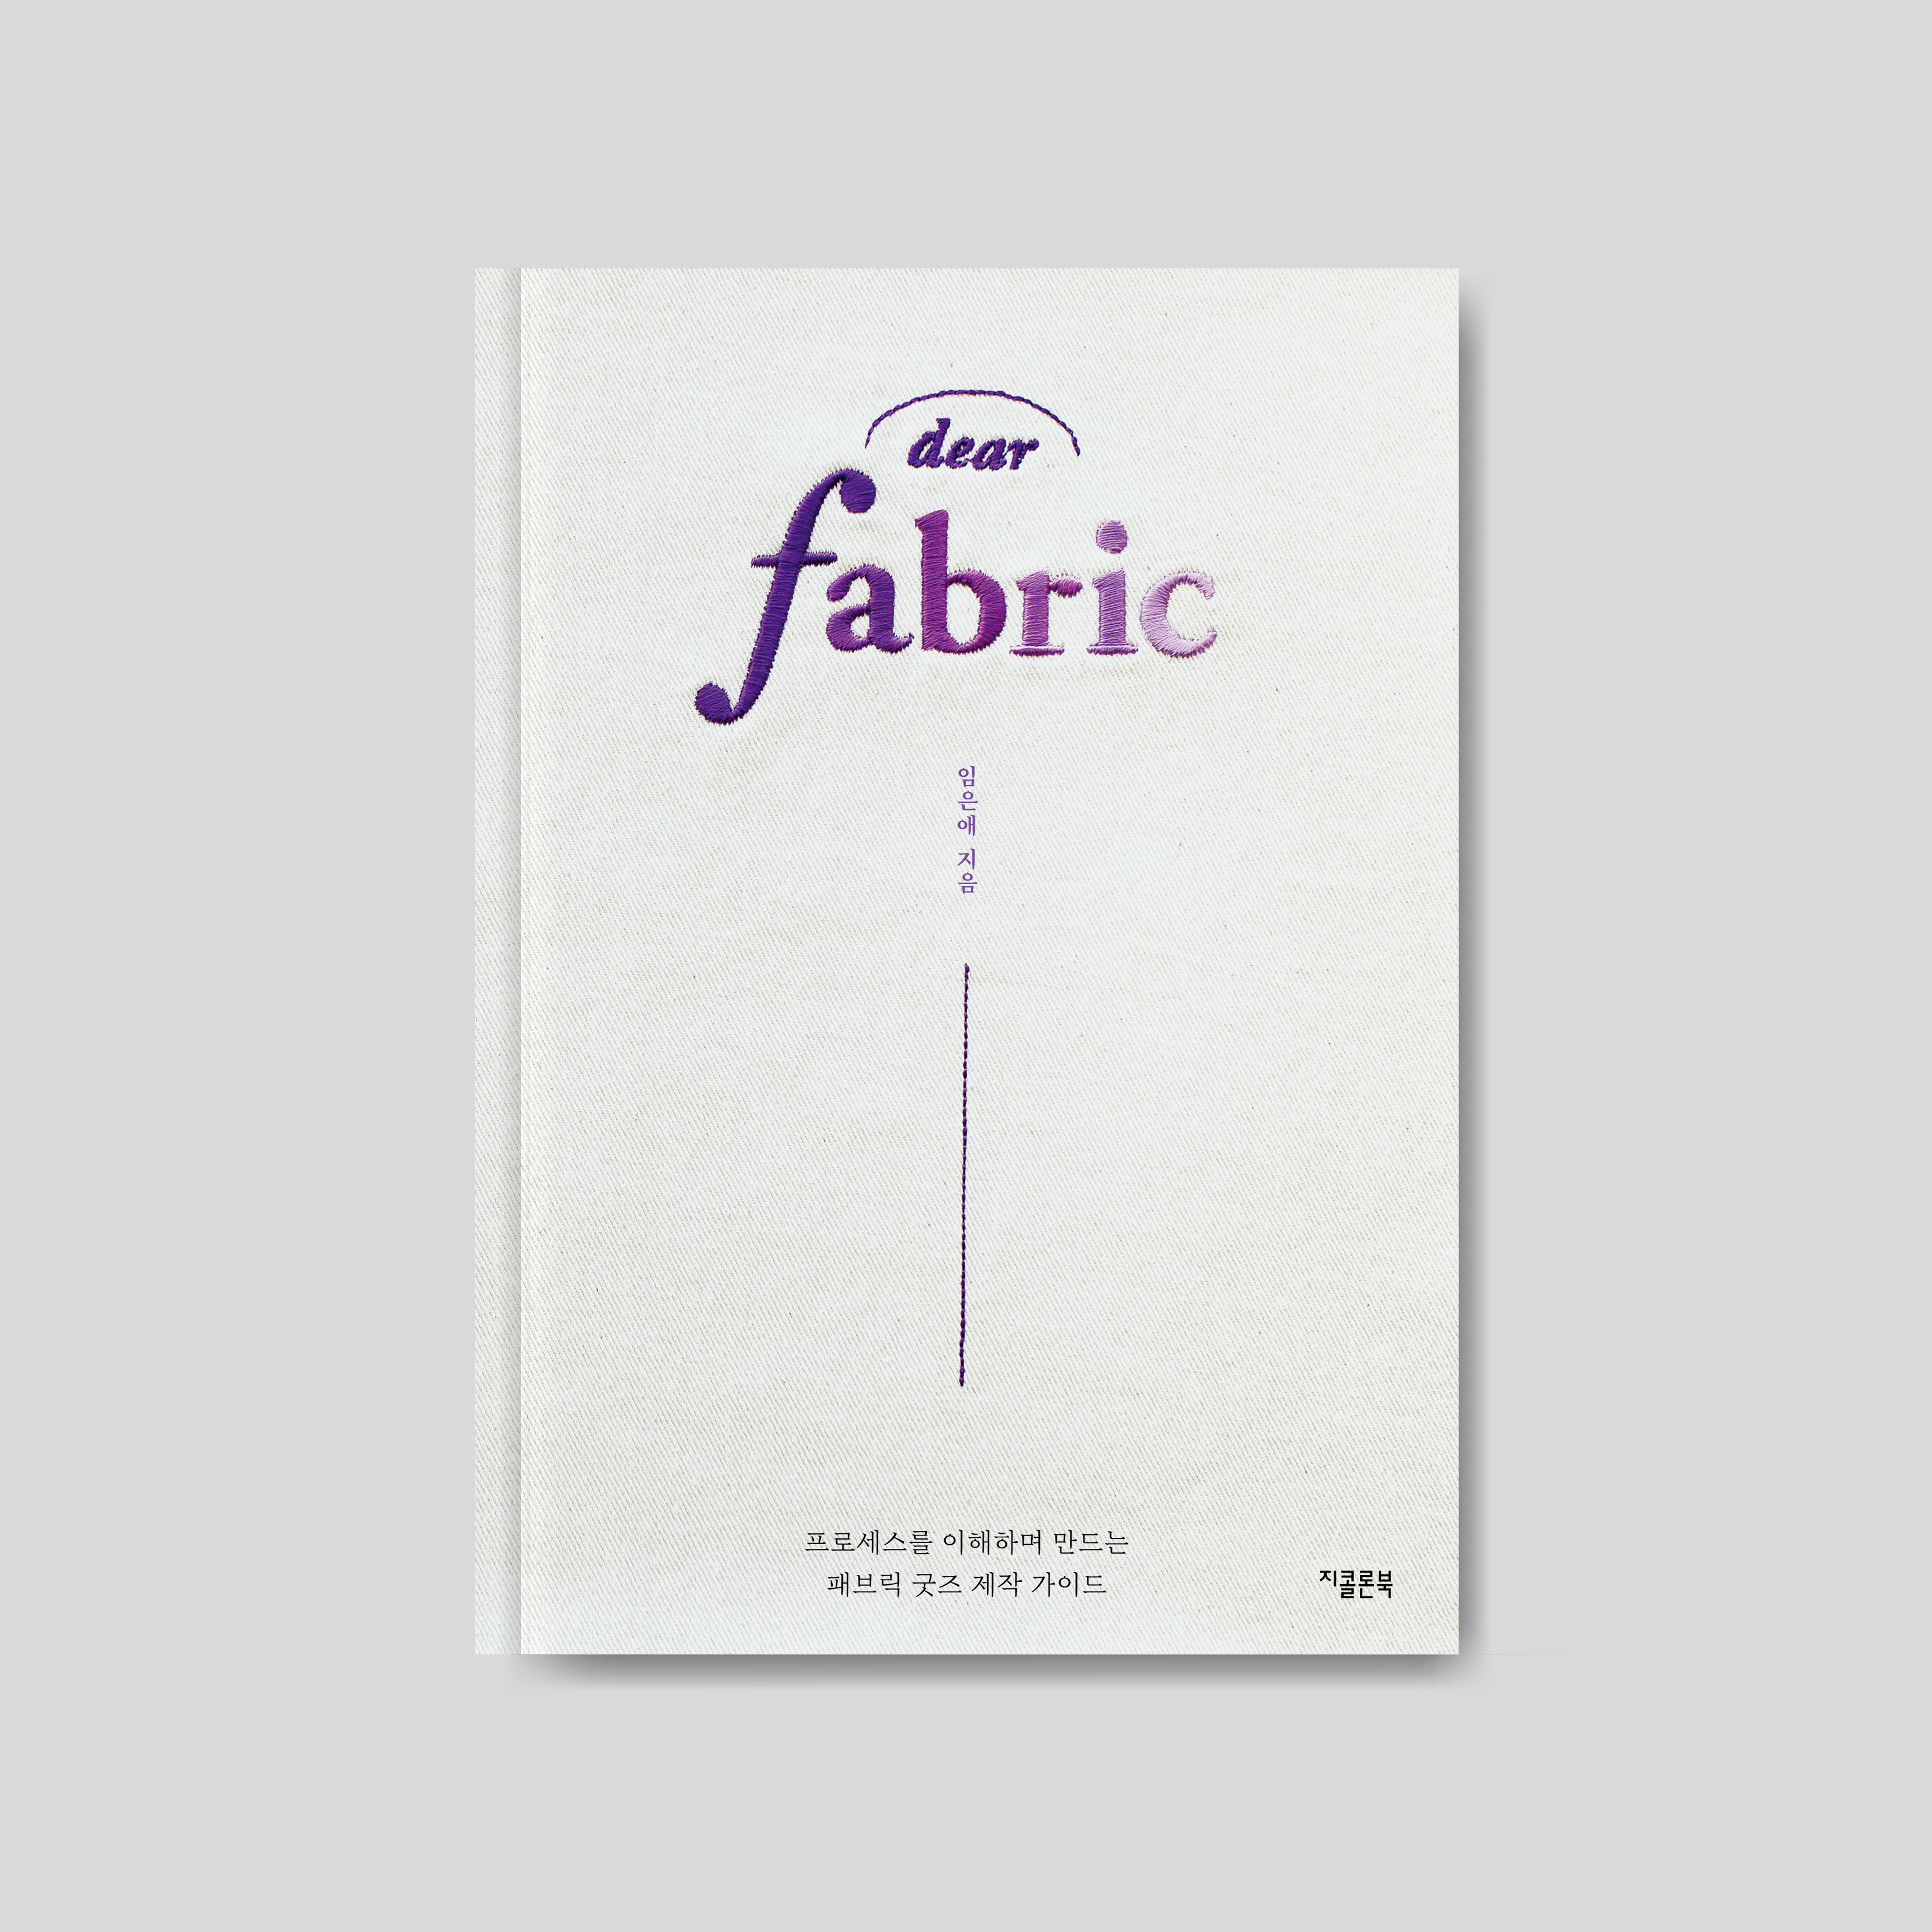 dear fabric